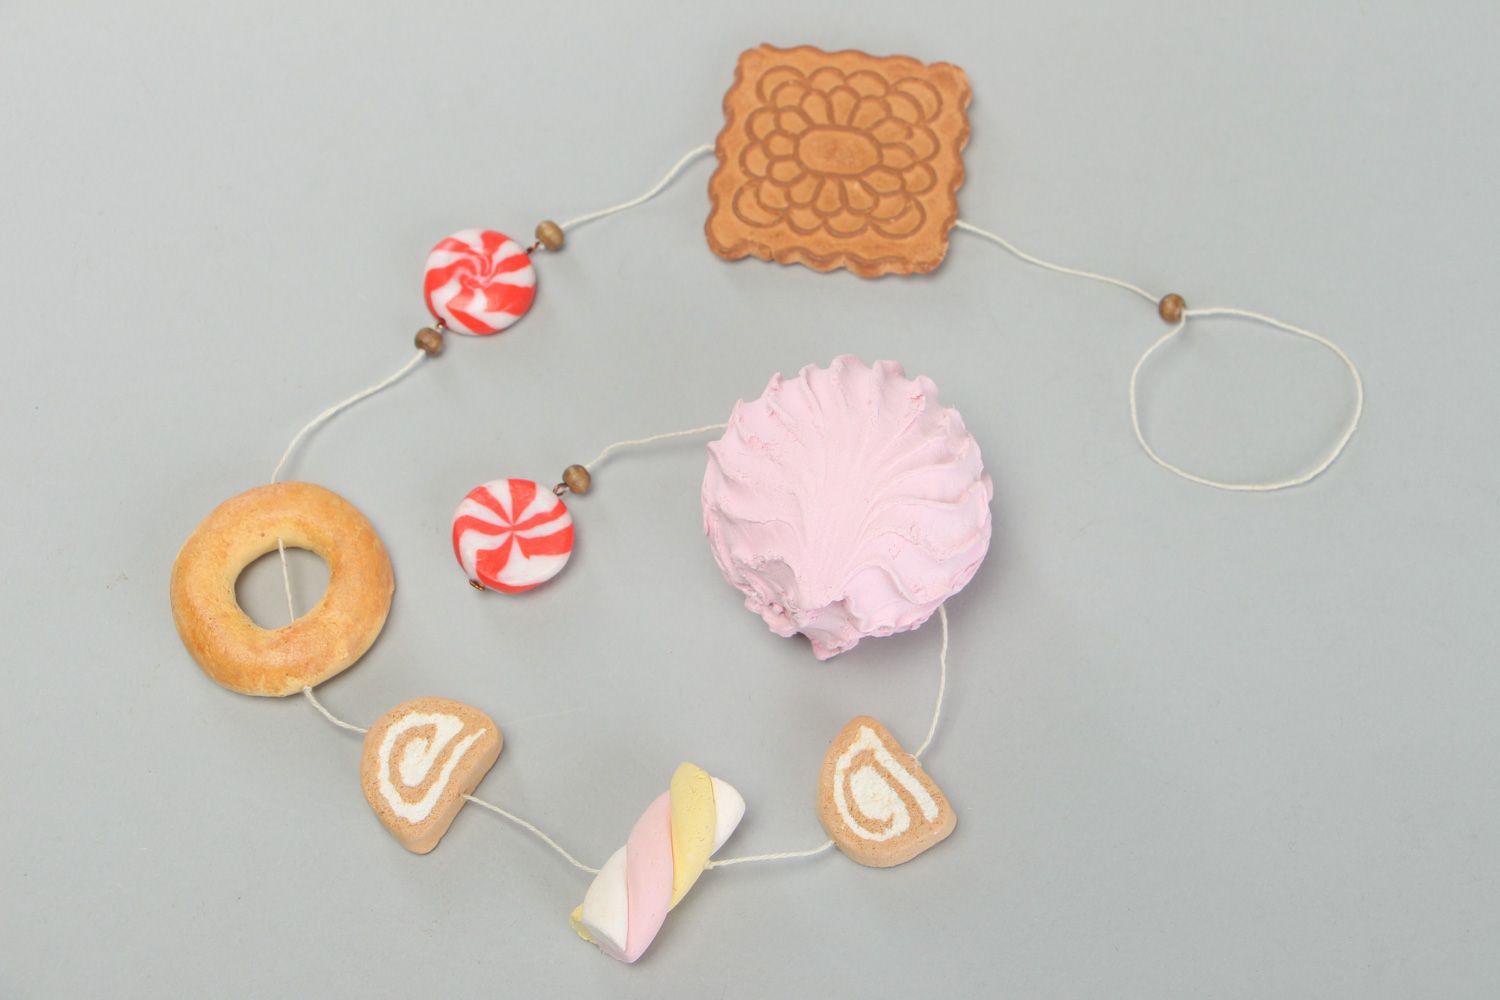 Гирлянда из декоративных сладостей из пластики фото 1